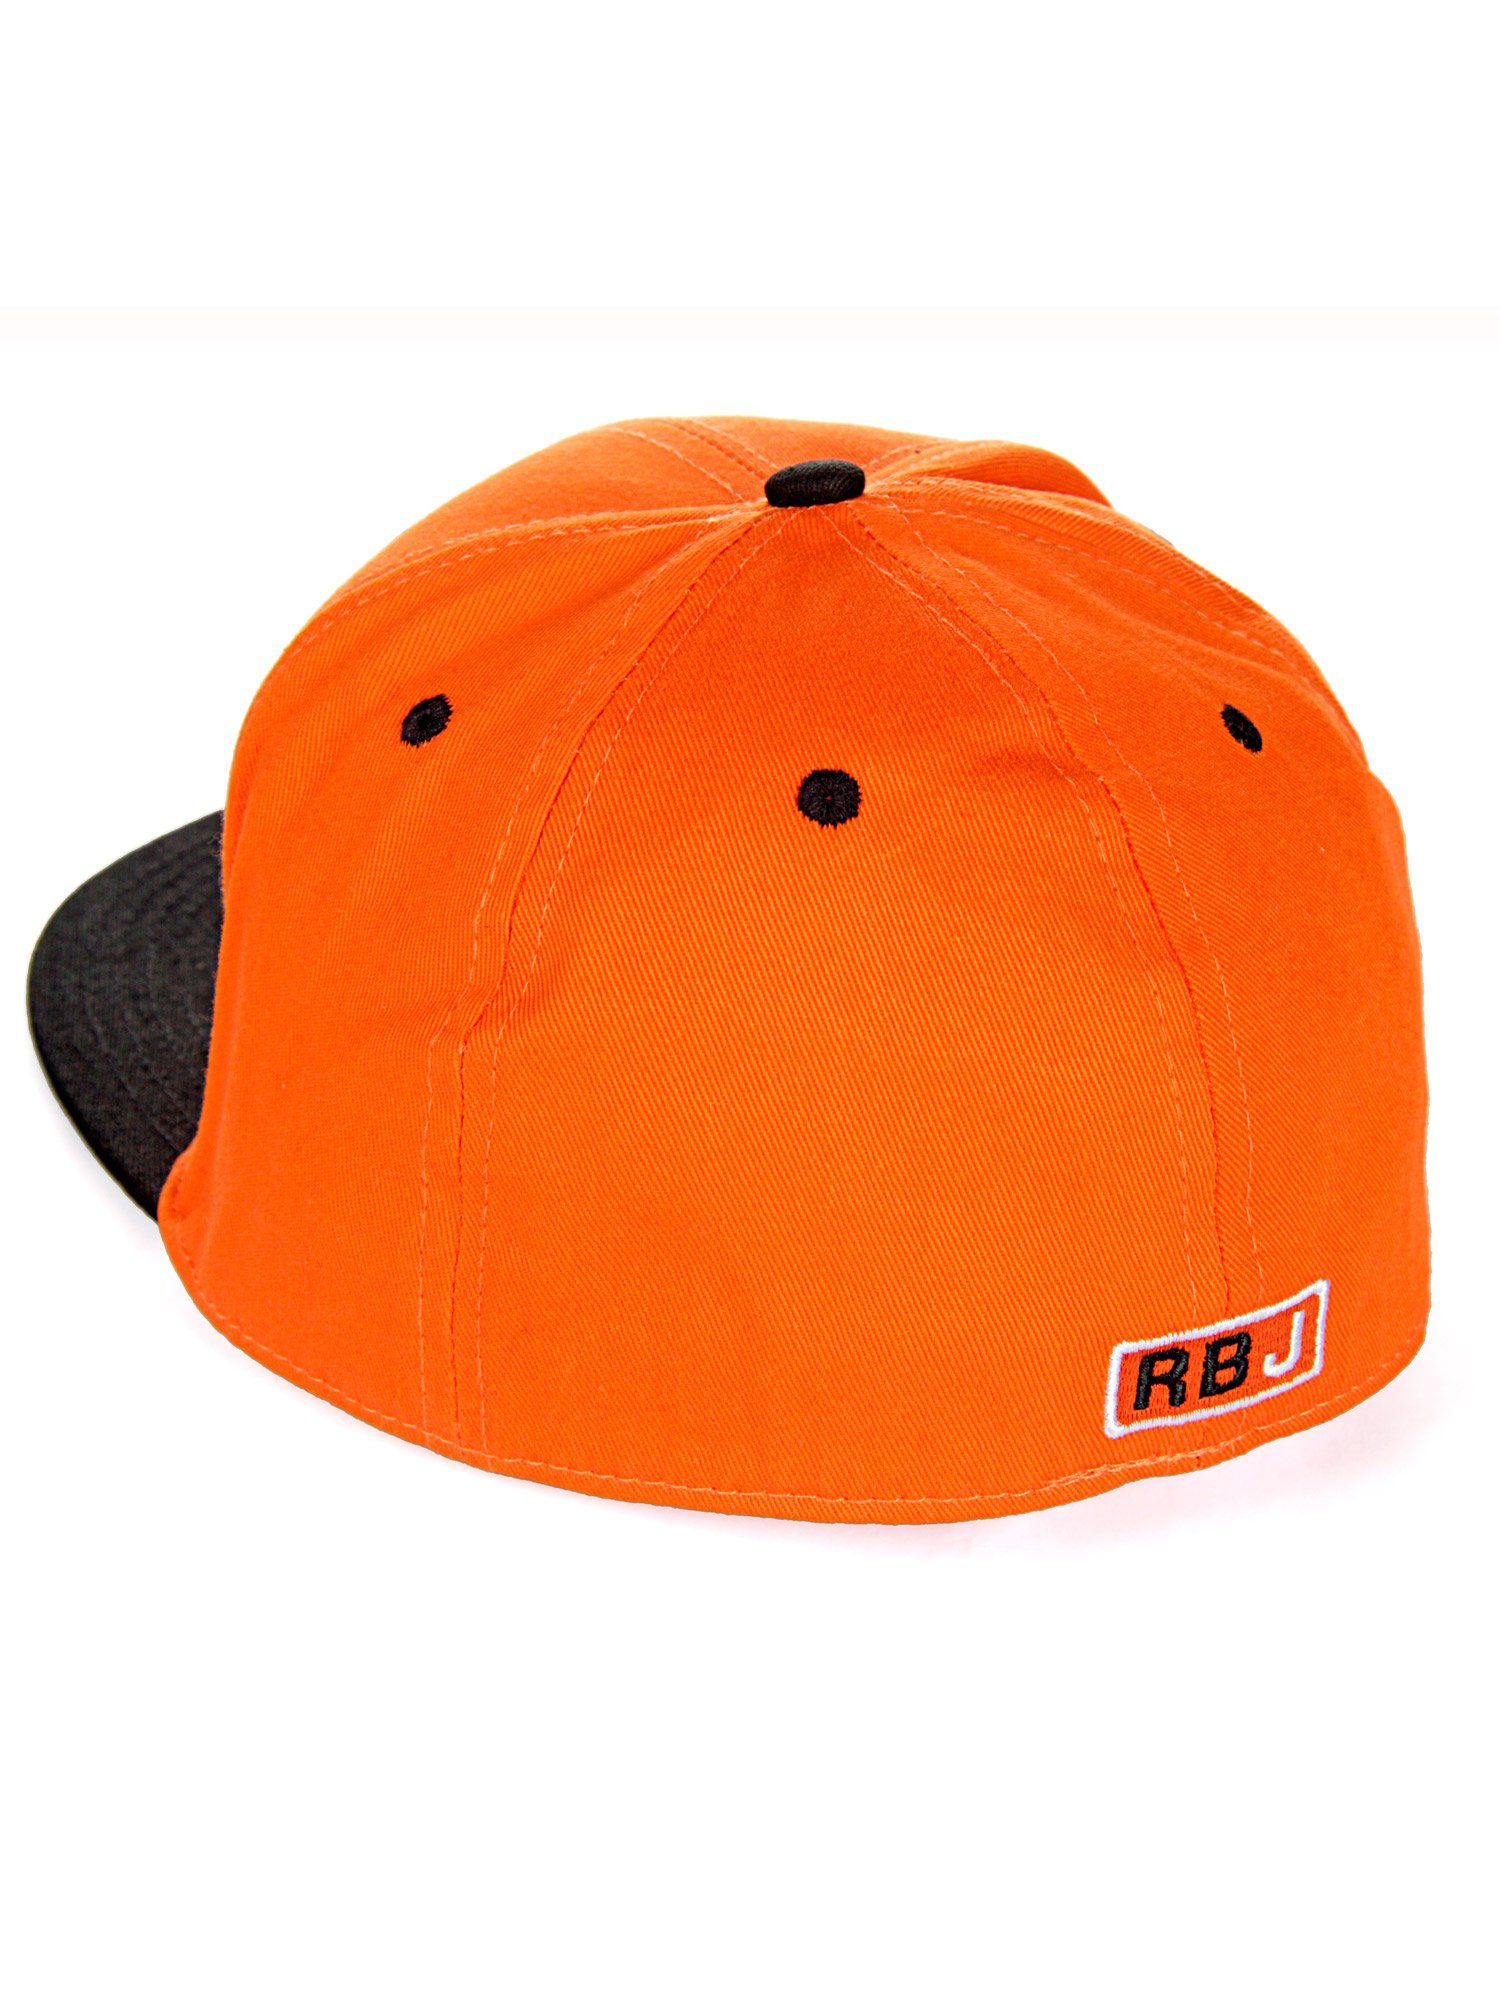 kontrastfarbigem Cap Durham orange-schwarz Schirm RedBridge Baseball mit